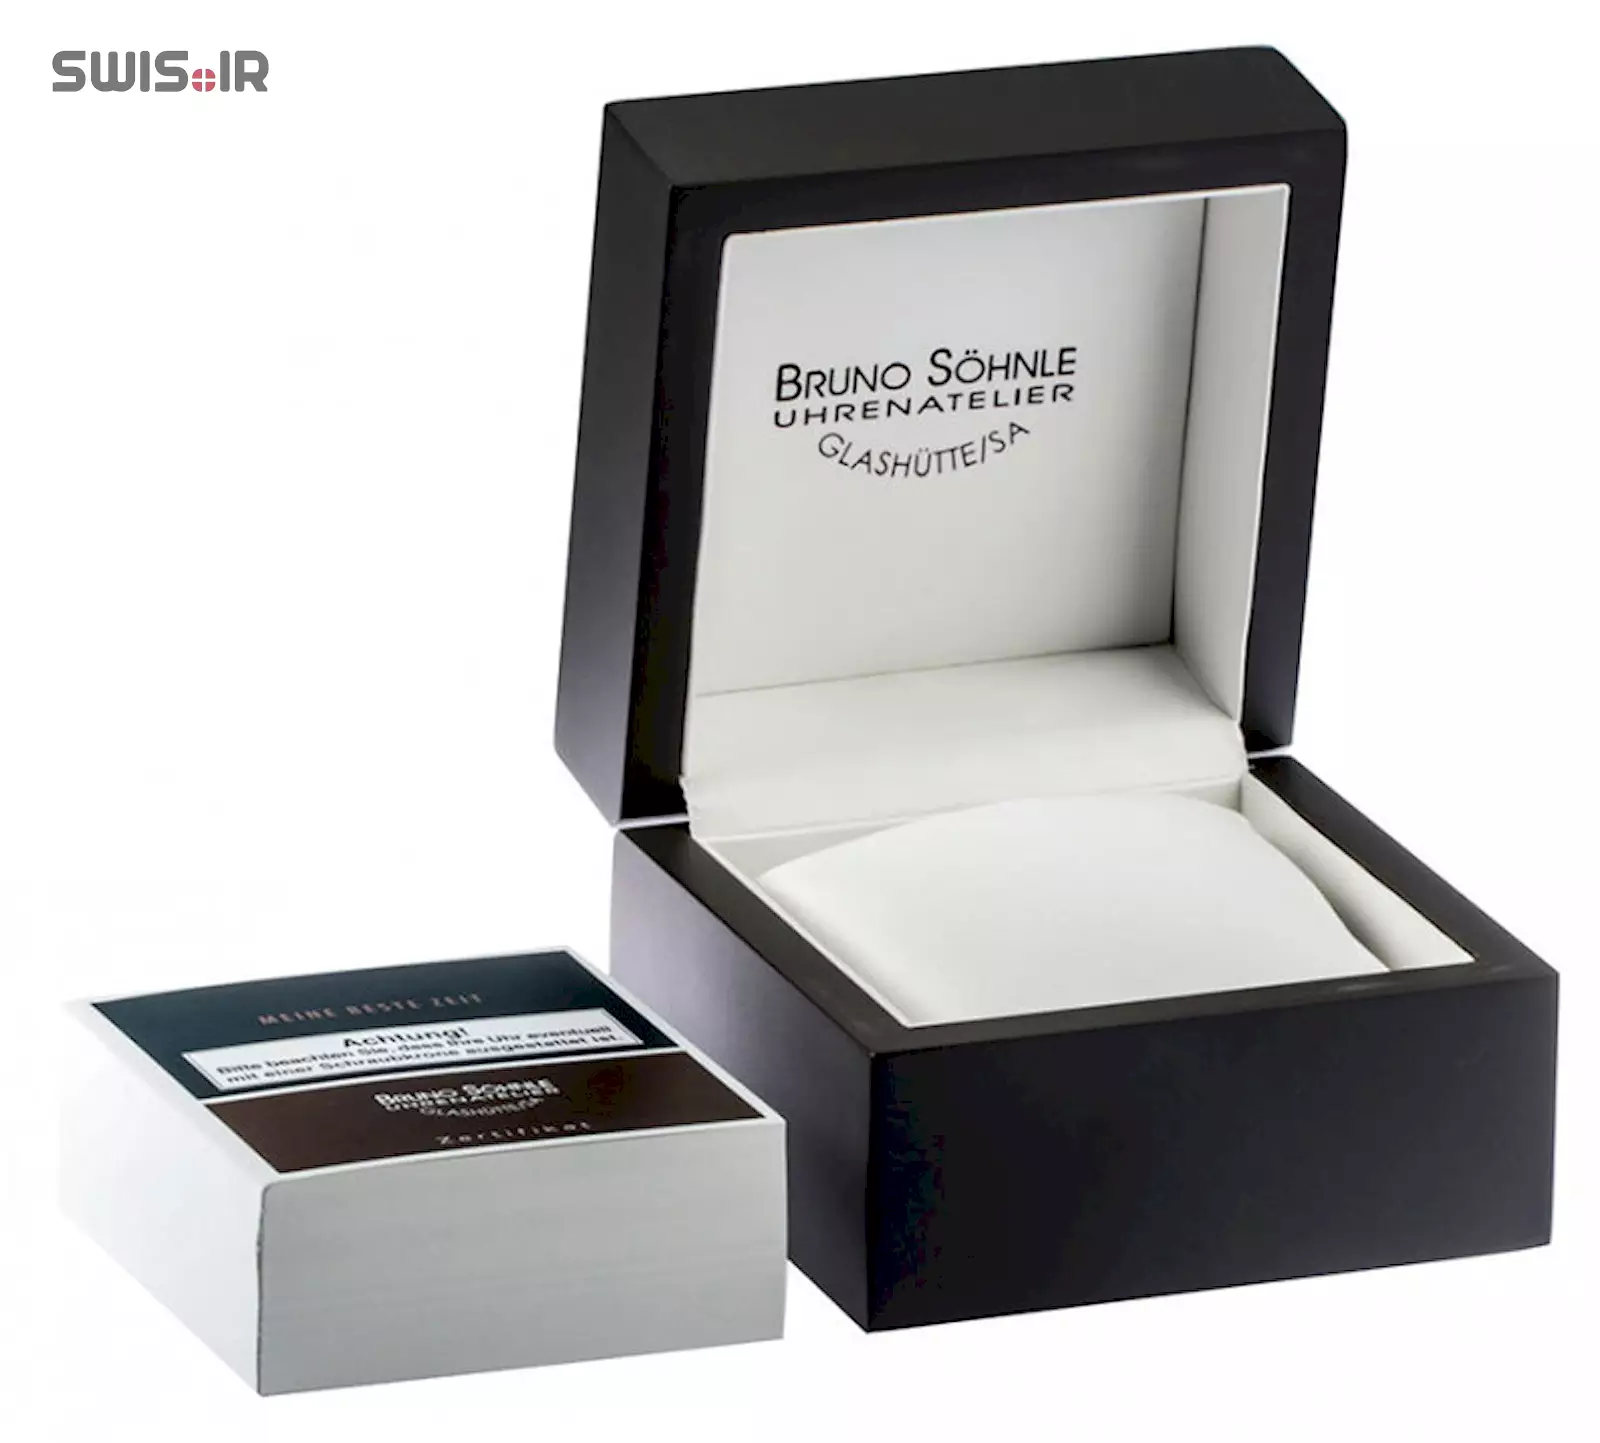 نمونه‌ای از جعبه ساعت هدیه (Gift Box) شرکت برونو زونله آلمان